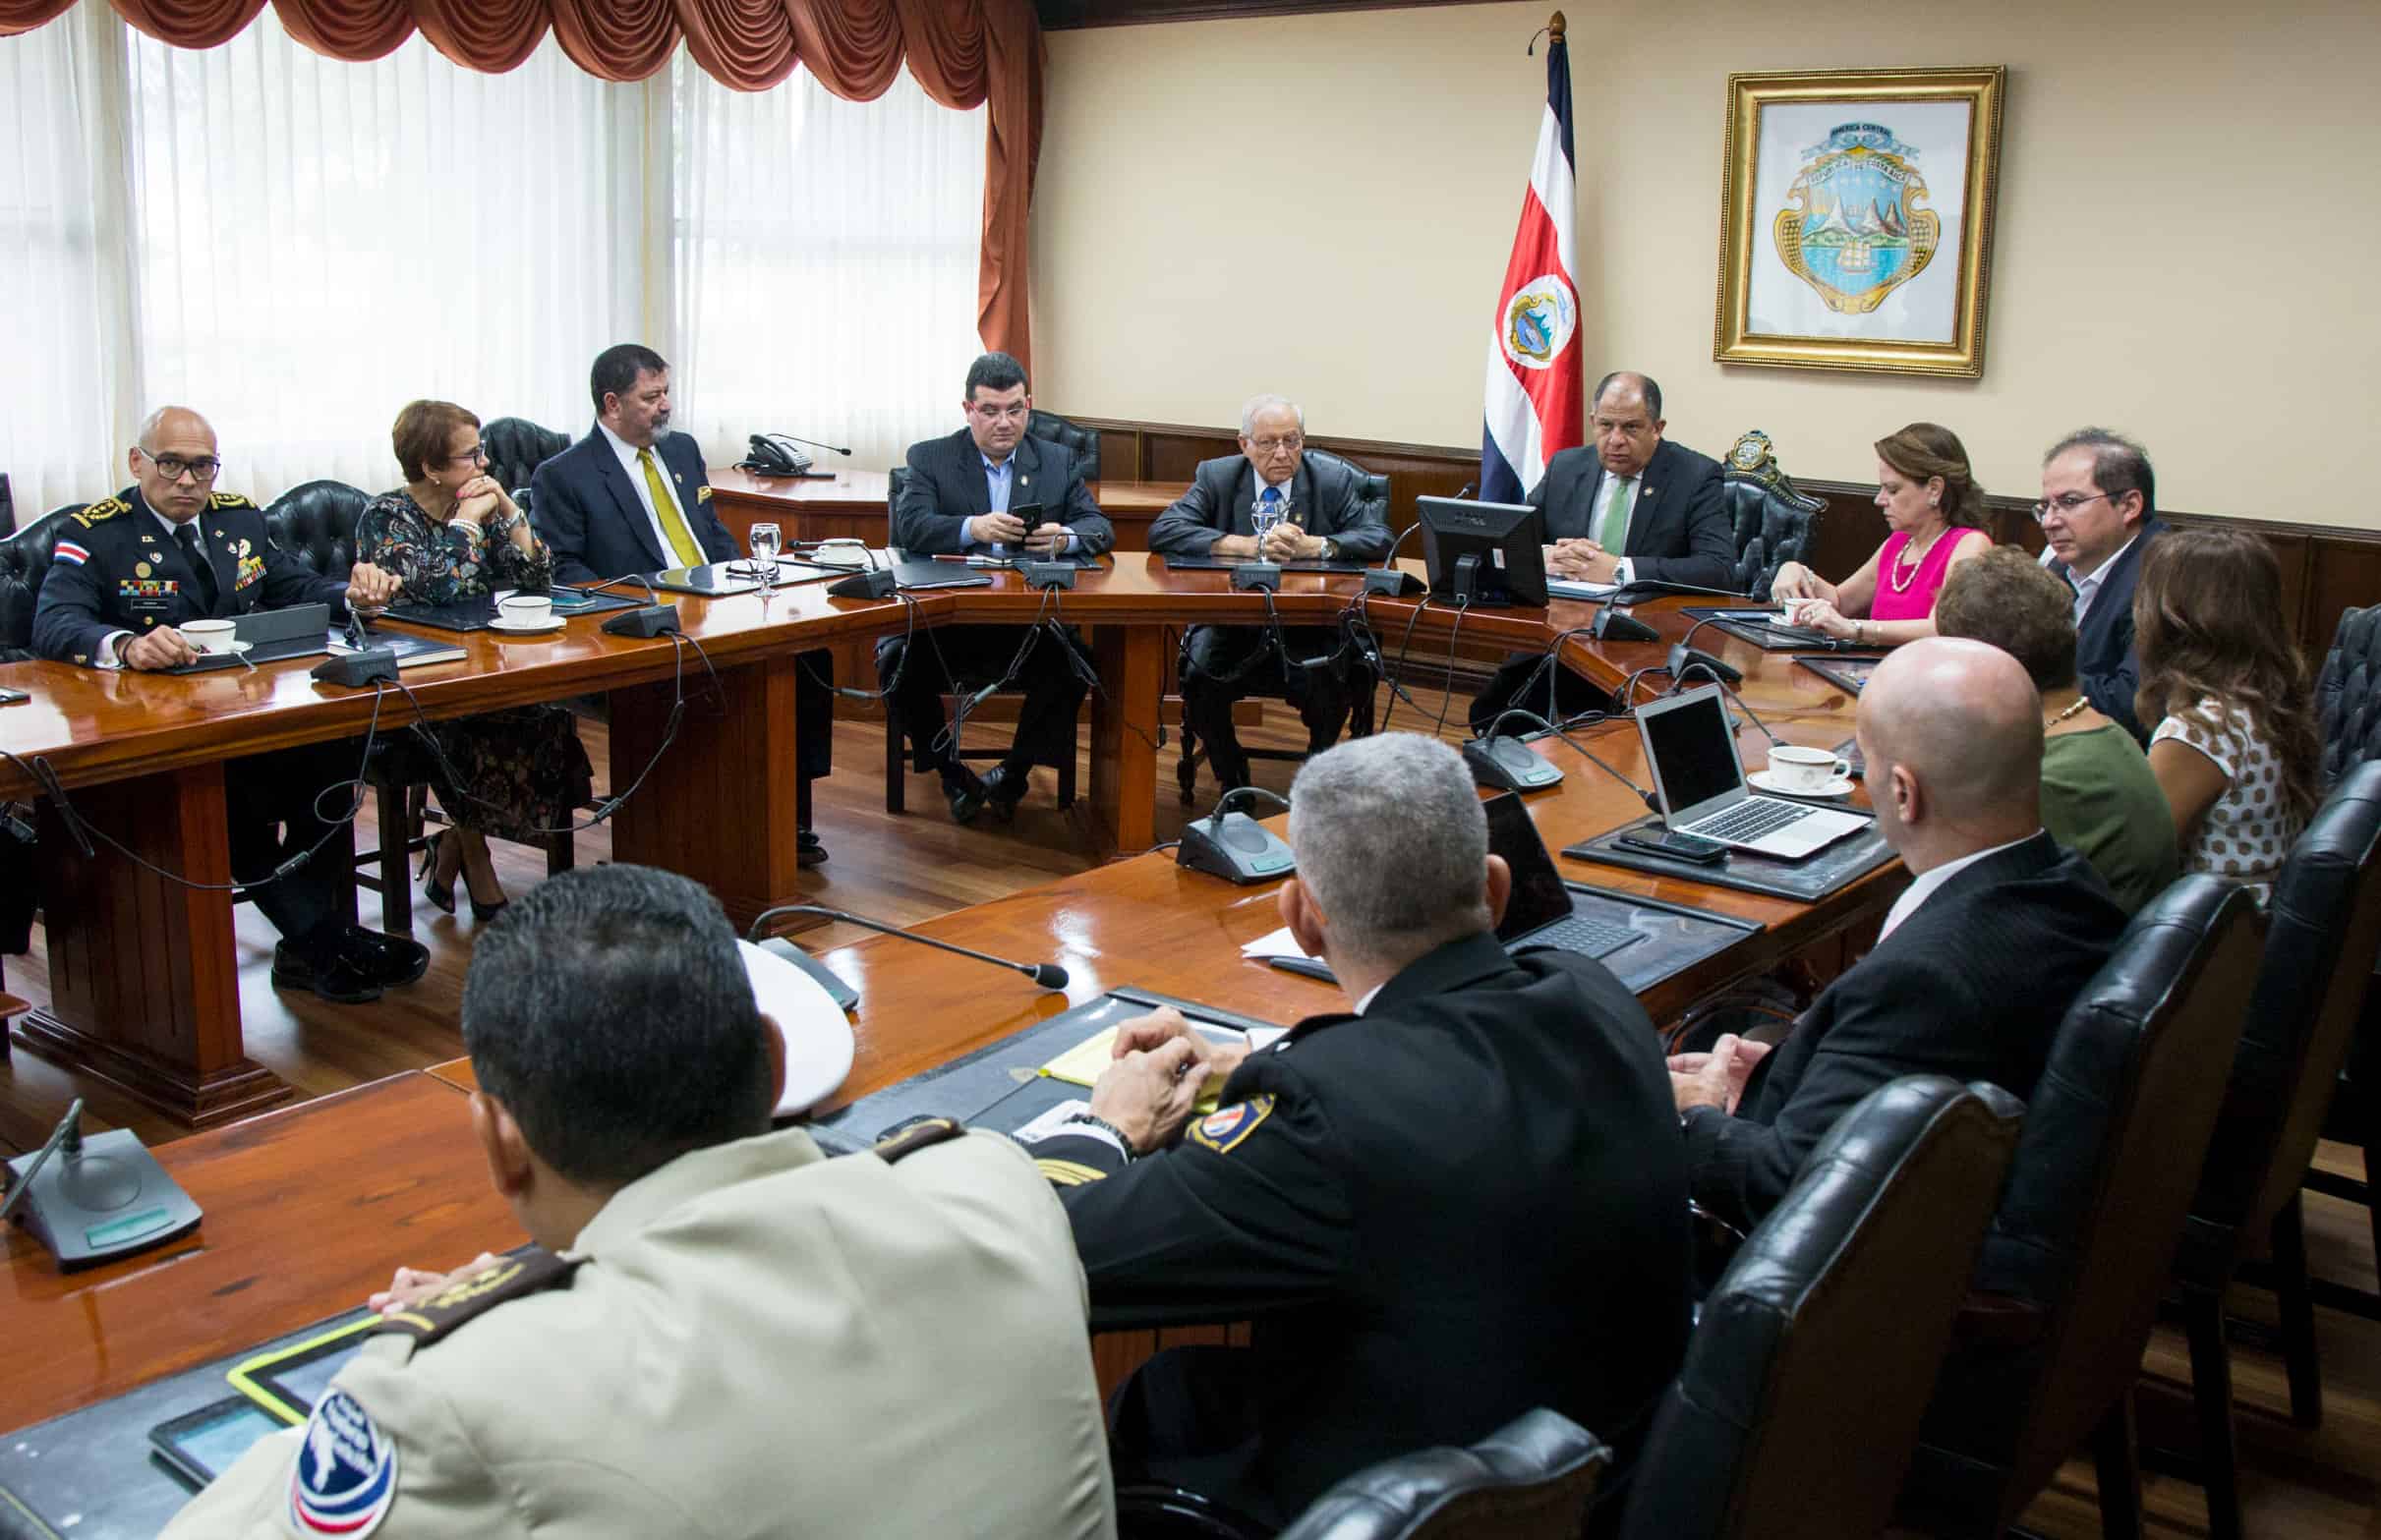 Public Security meeting at Casa Presidencial. May 17, 2017.